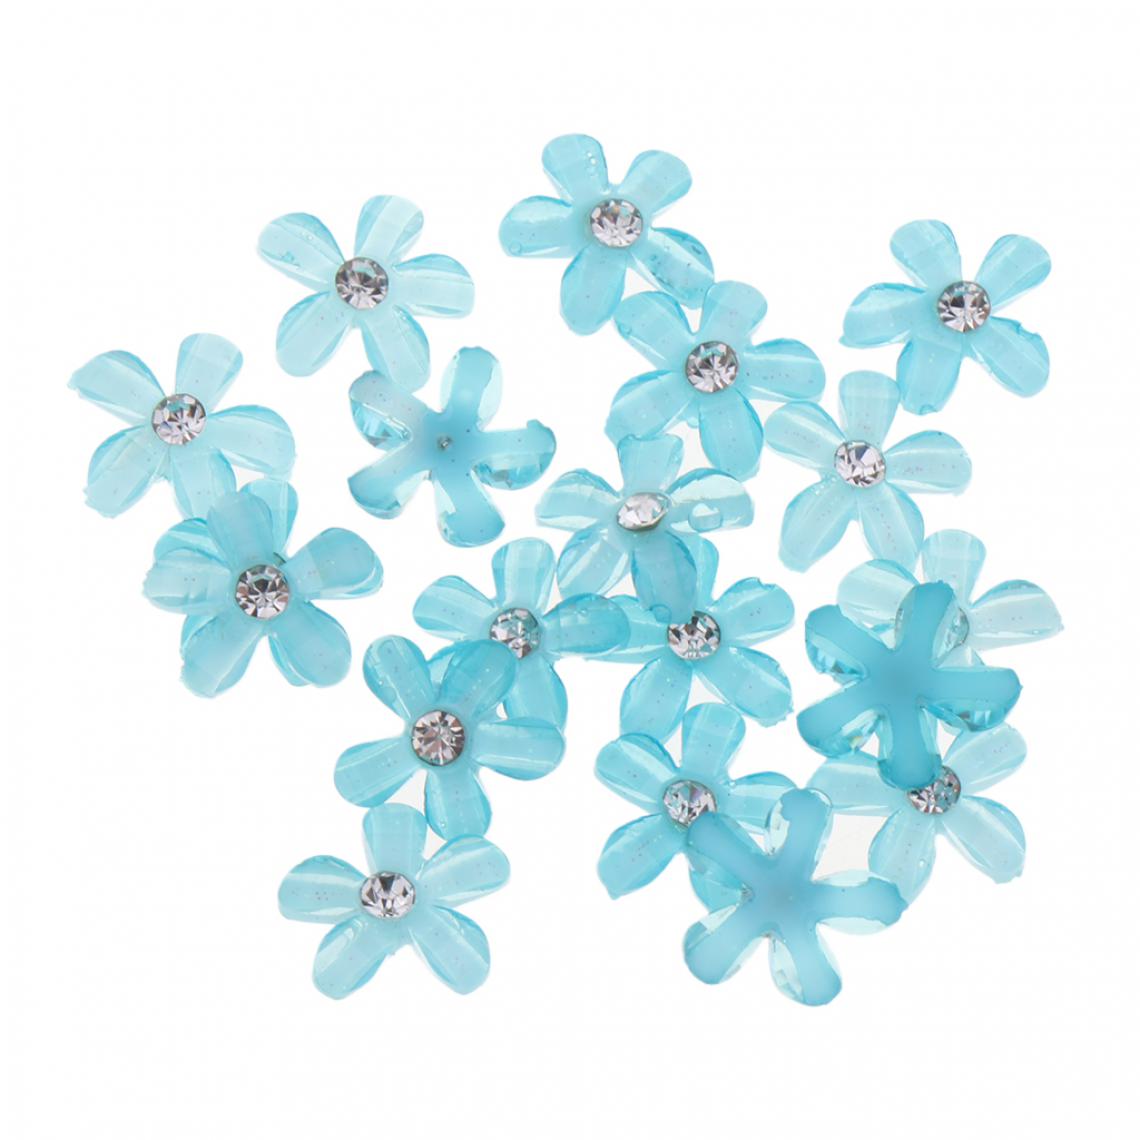 marque generique - 20 fleurs flatback bouton embellissements strass pour mariage rose - Poignée de meuble